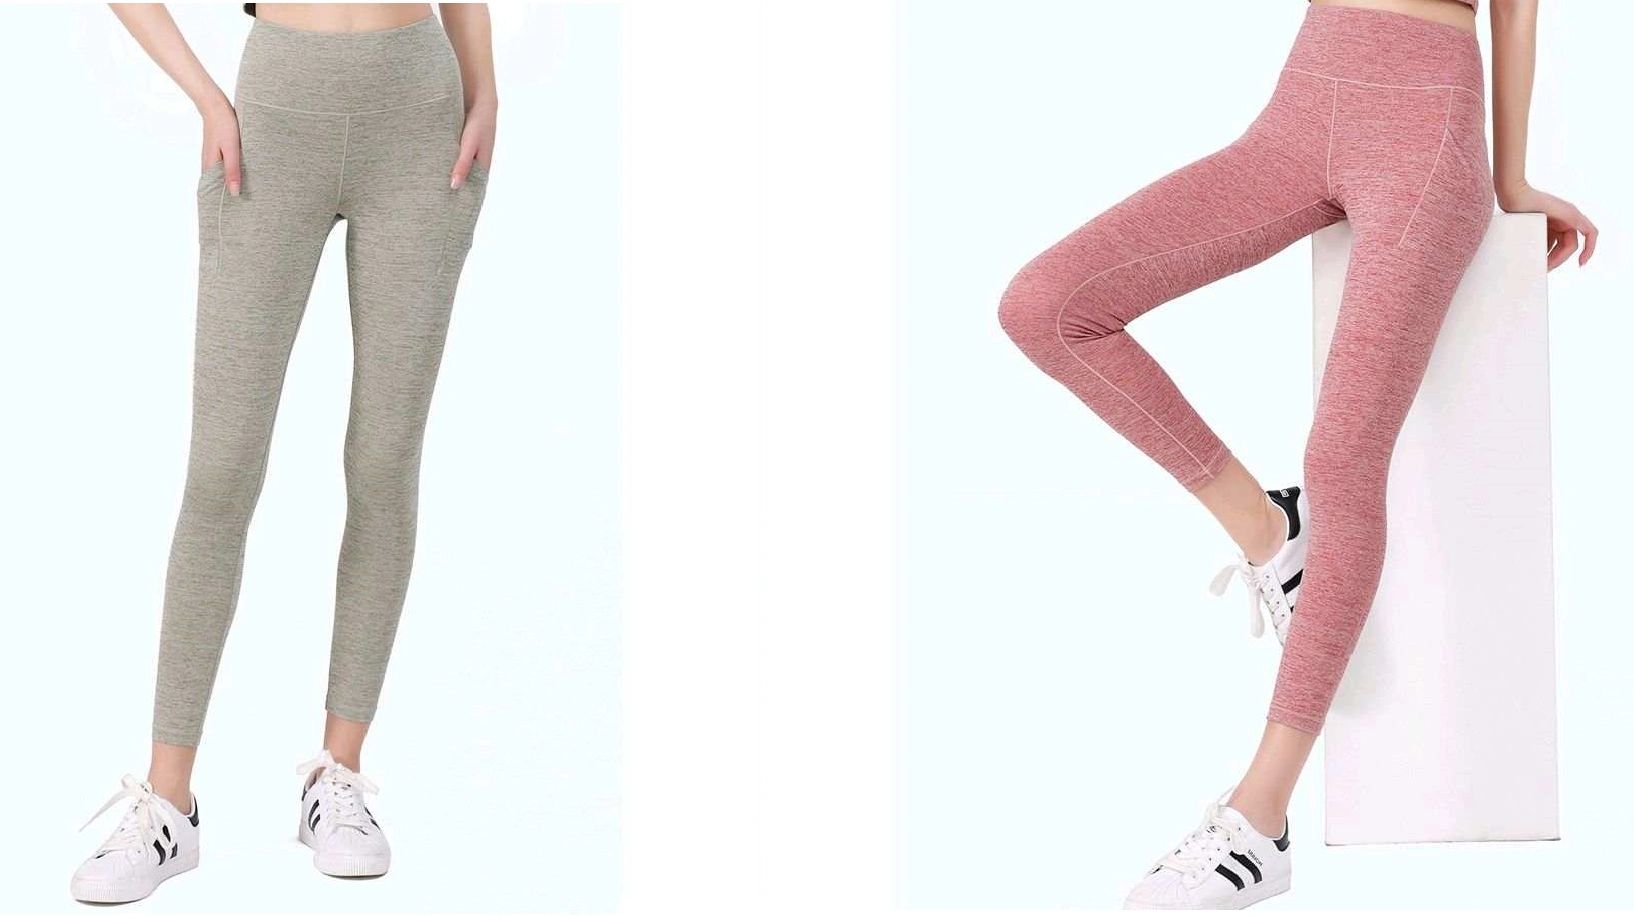 Blanca Line - Womens Clothing, Leggings, Yoga Pants